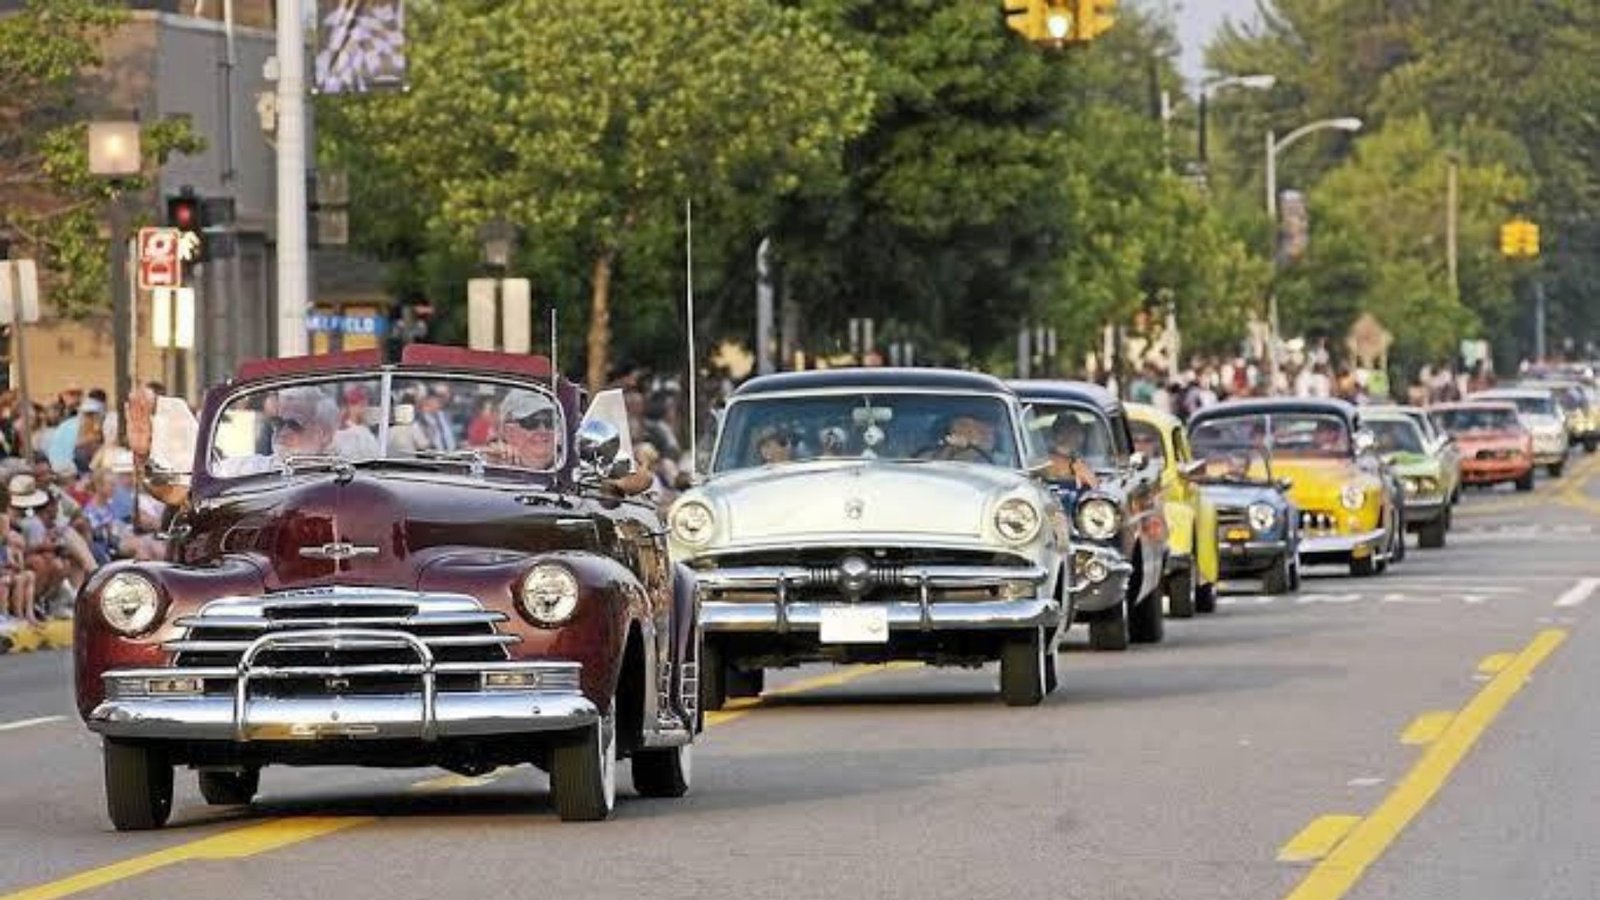 Autoshow fará carreata de carros antigos em comemoração ao aniversário de SP